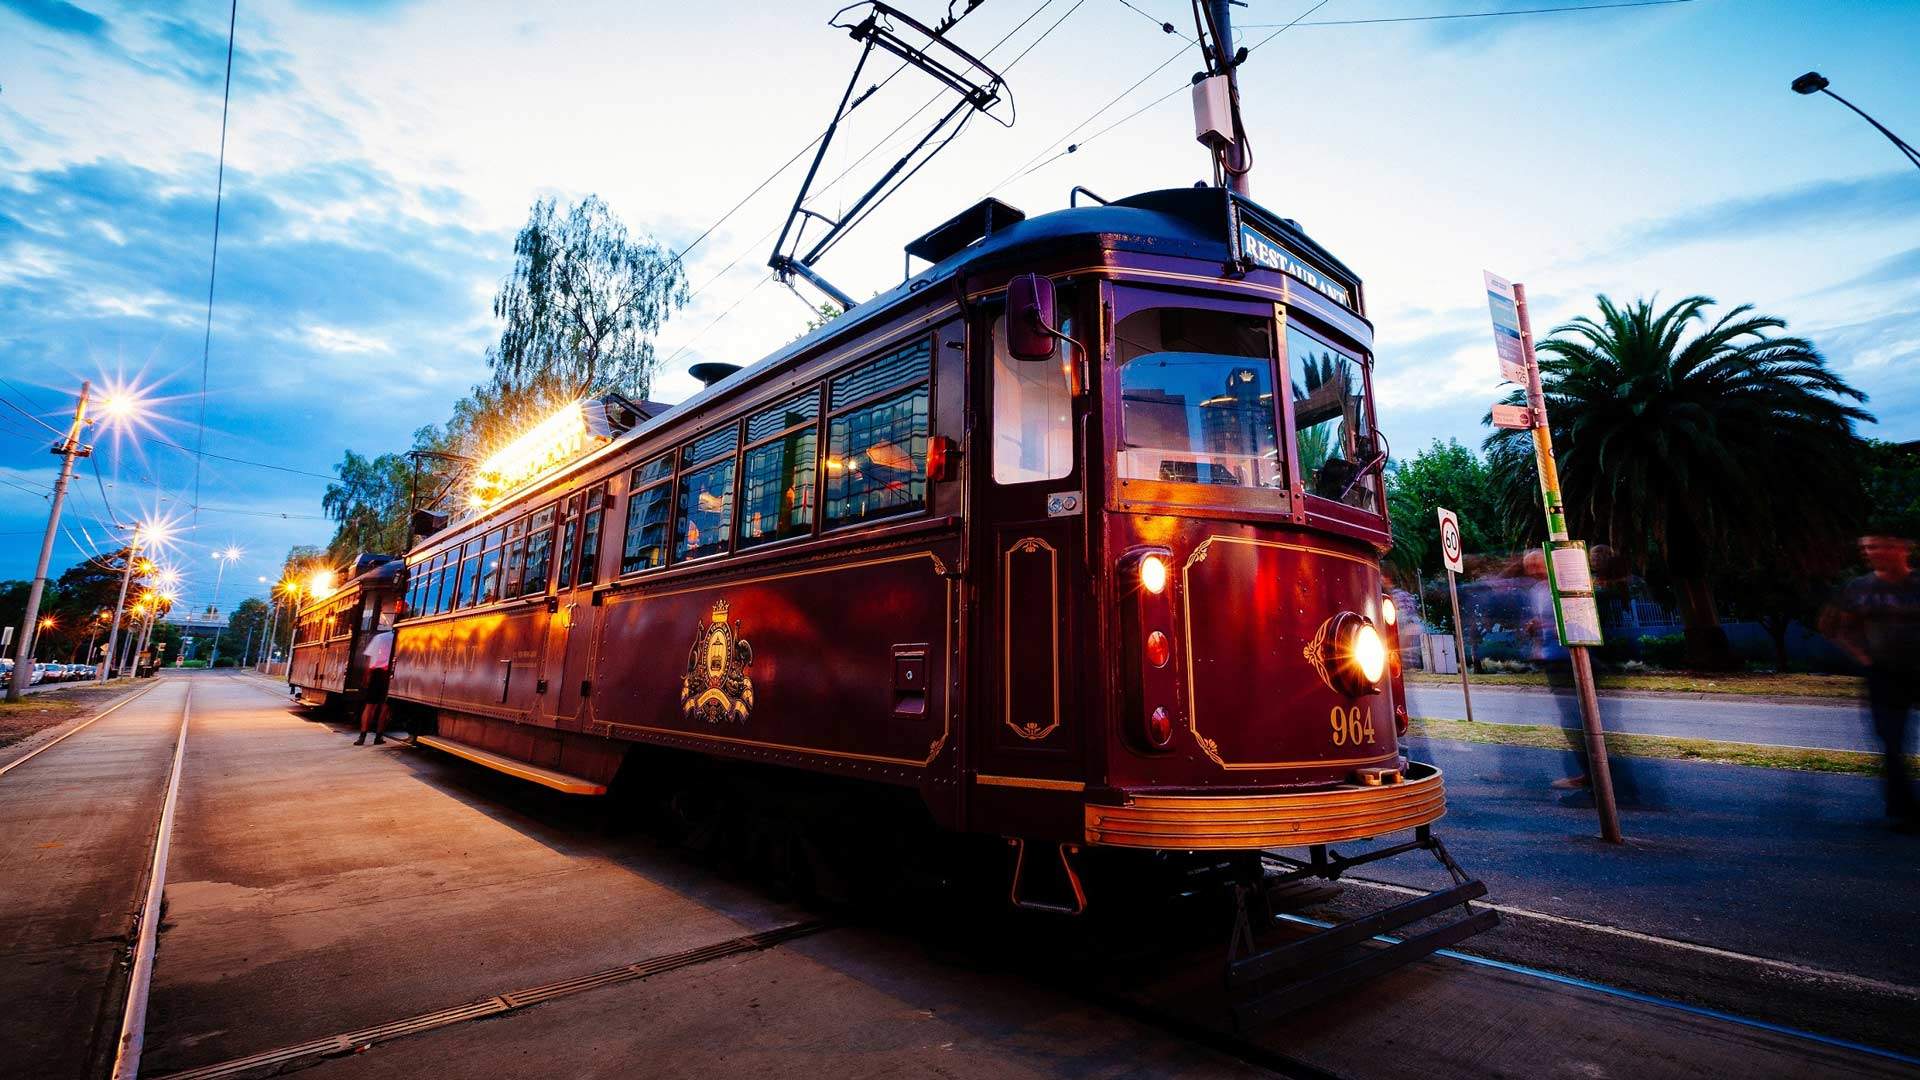 Melbourne's Famed Vintage Tram Restaurant Has Left the Tracks Amid Safety Concerns